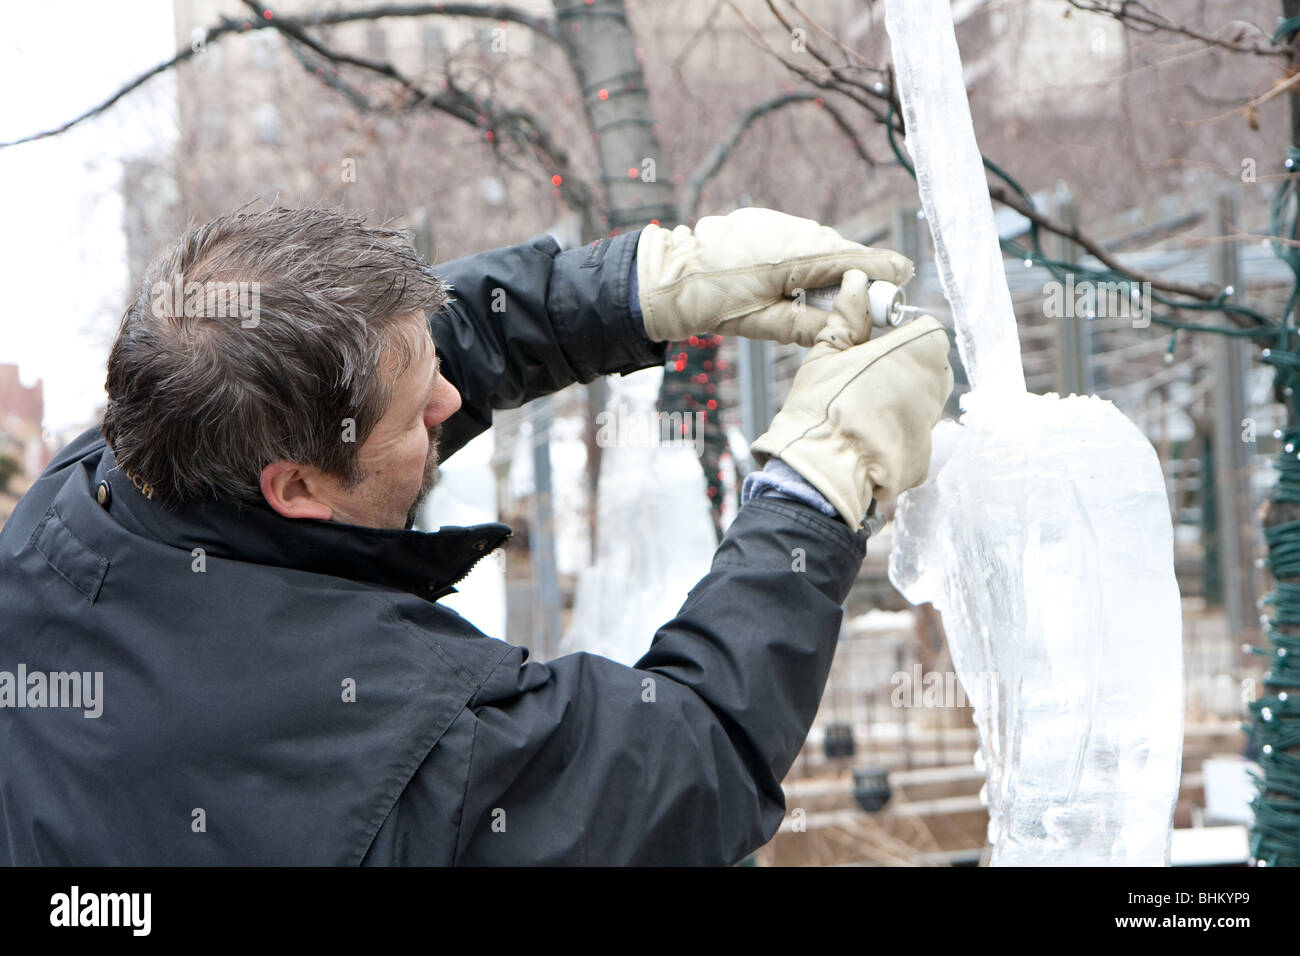 Un homme travaillant sur une sculpture de glace Banque D'Images